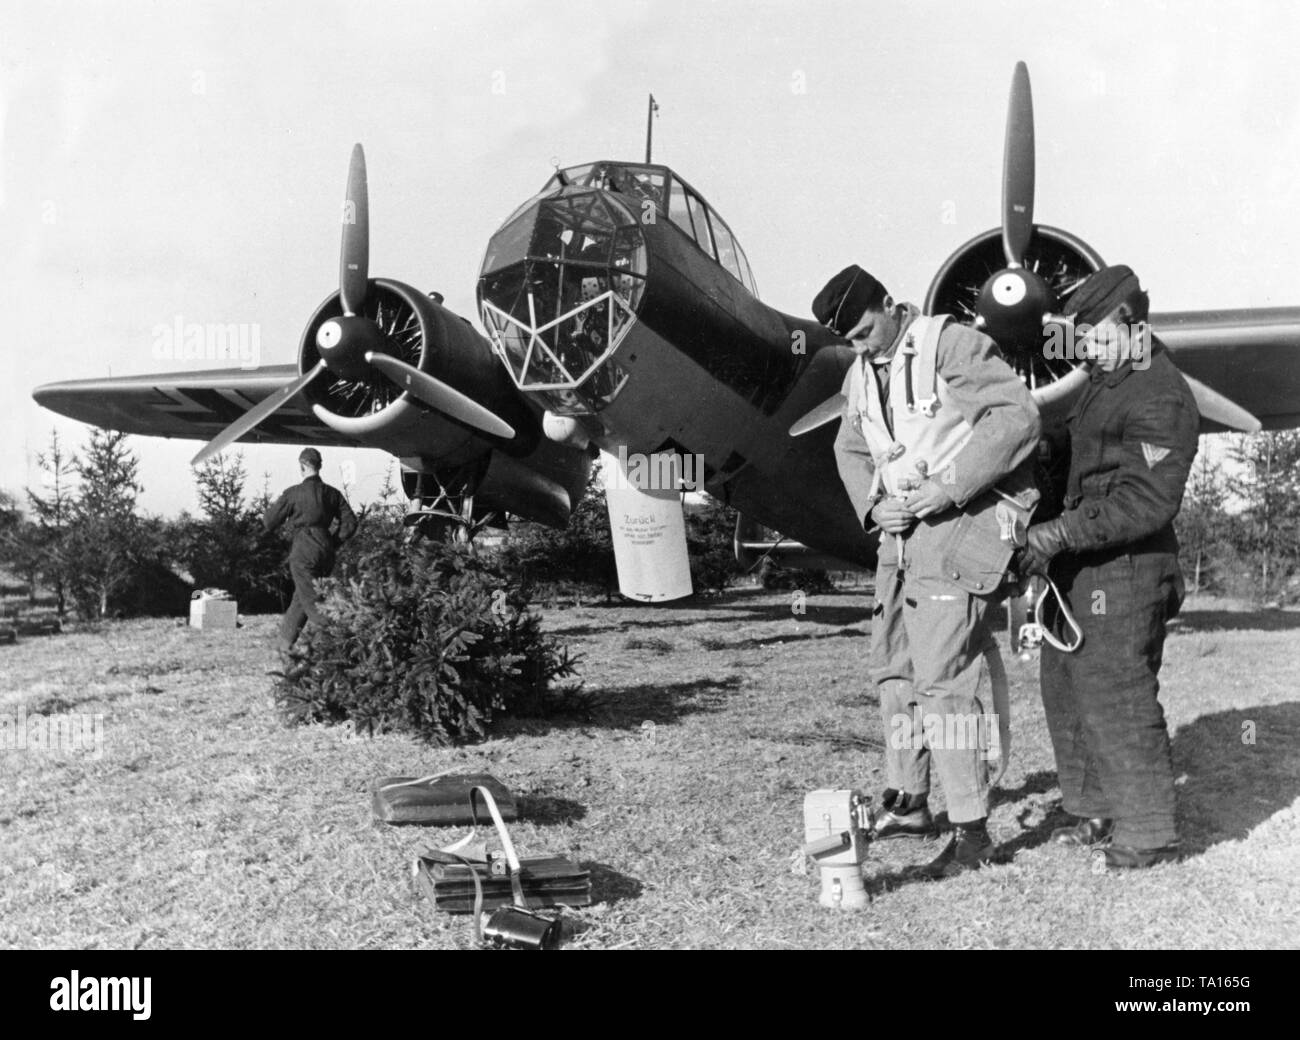 Dornier Do 17 Kampfflugzeuge für den Start vorbereiten. Ein Mann am Boden hilft, ein Mitglied der Besatzung mit dem Flug. Stockfoto